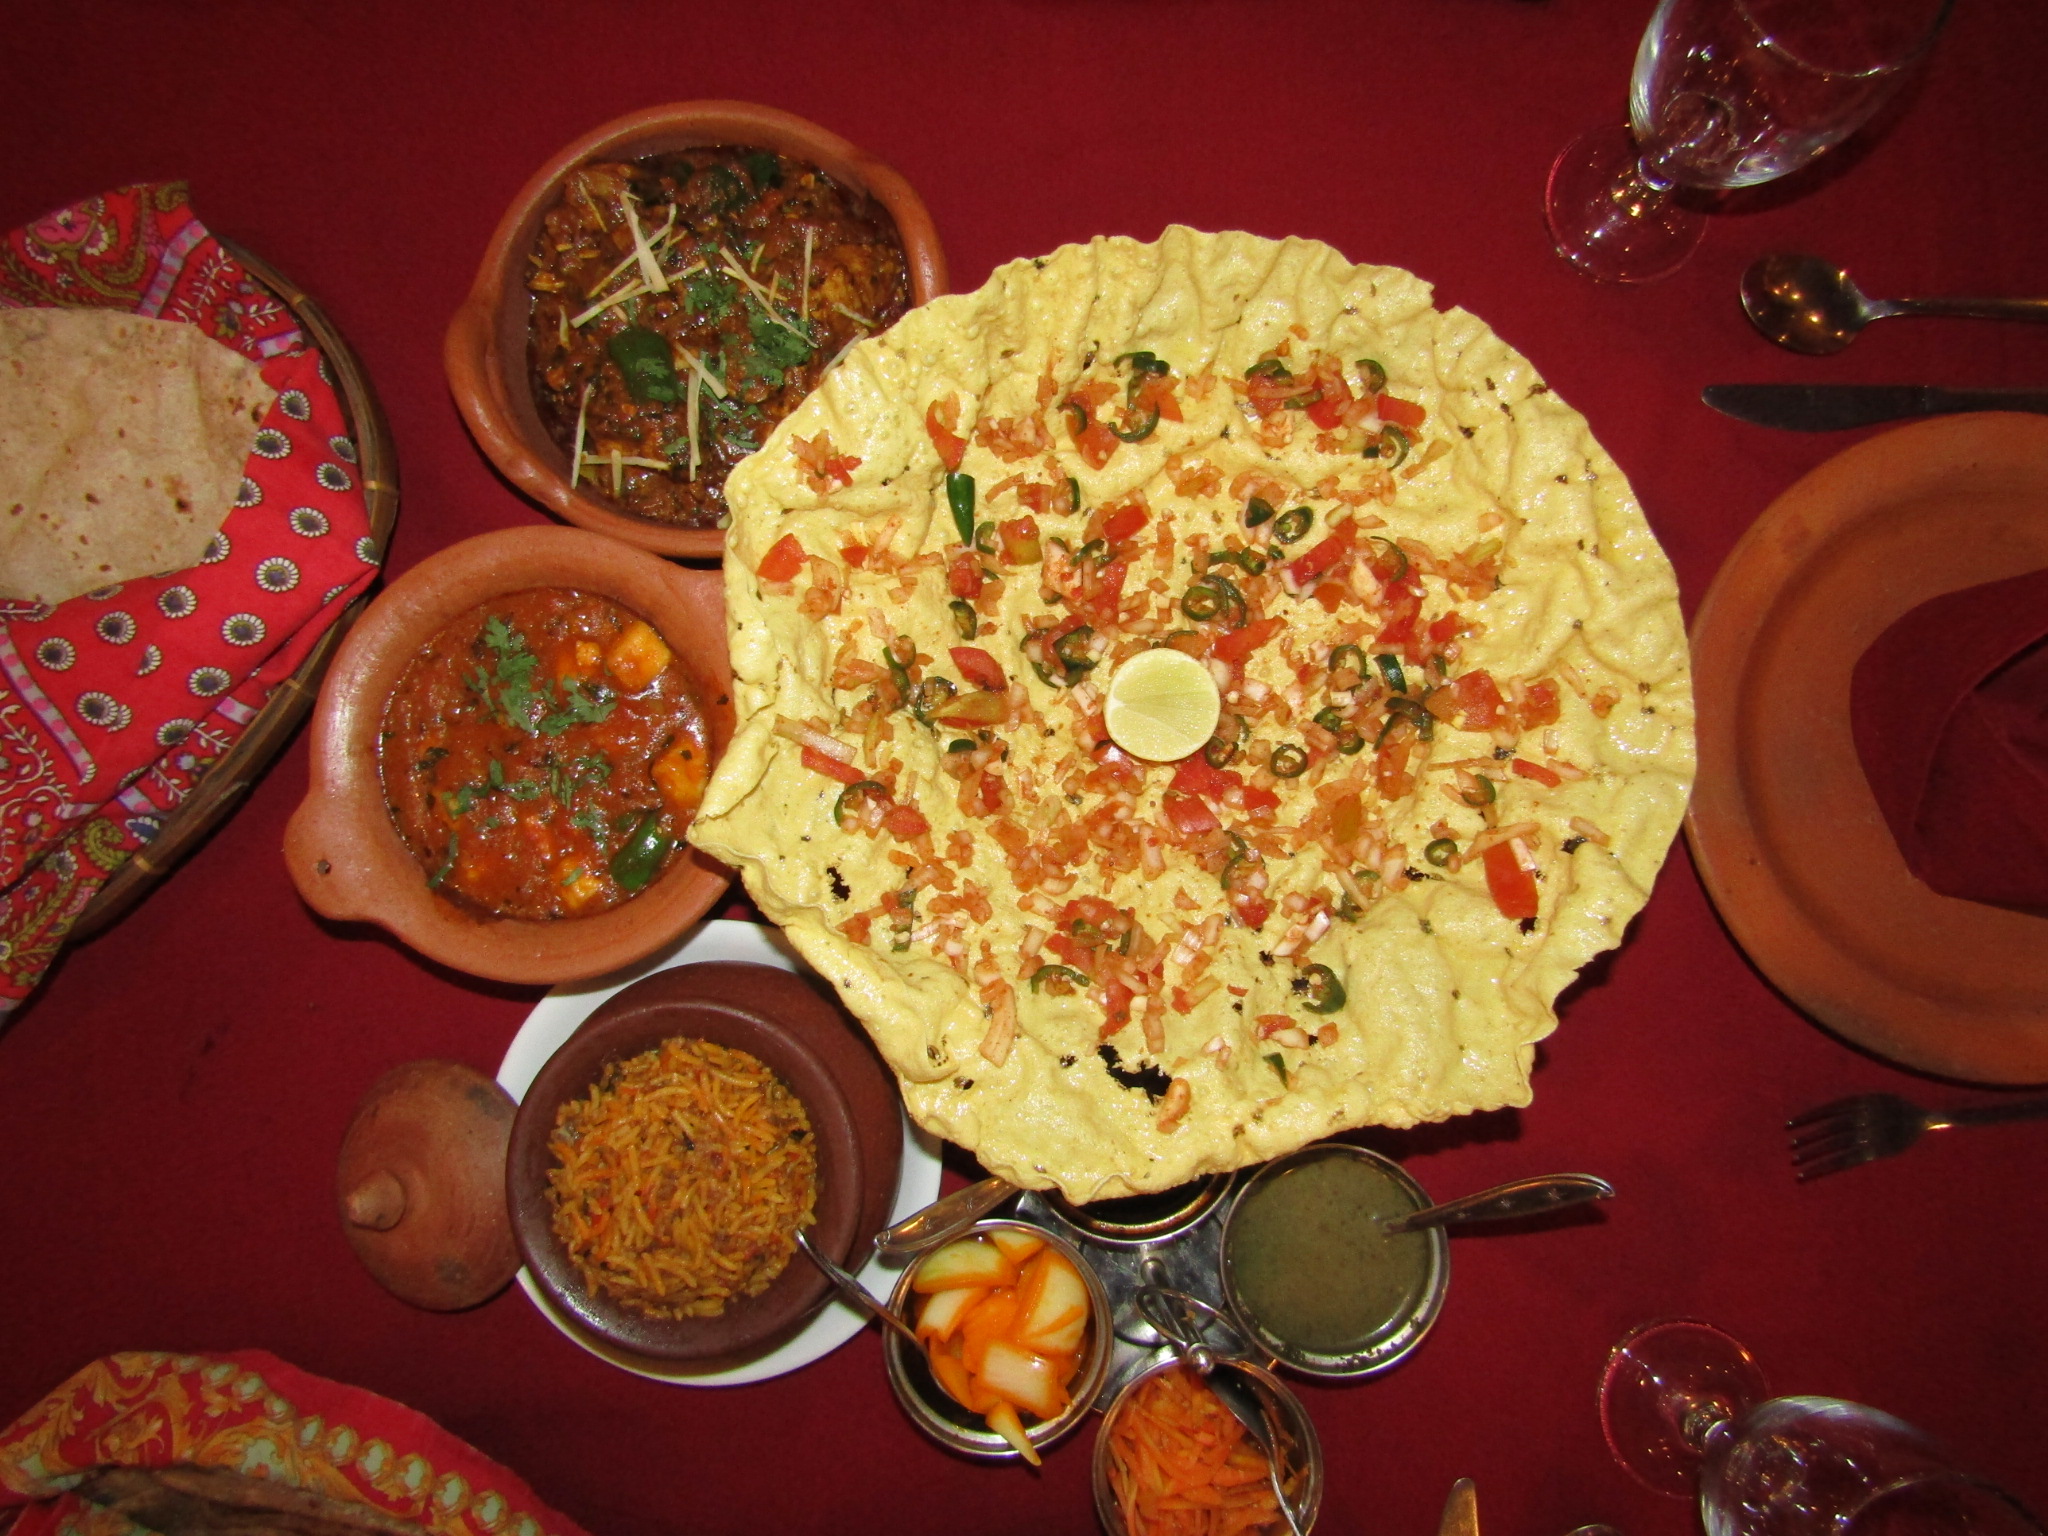 #Restaurant Review: Koh-e-noor